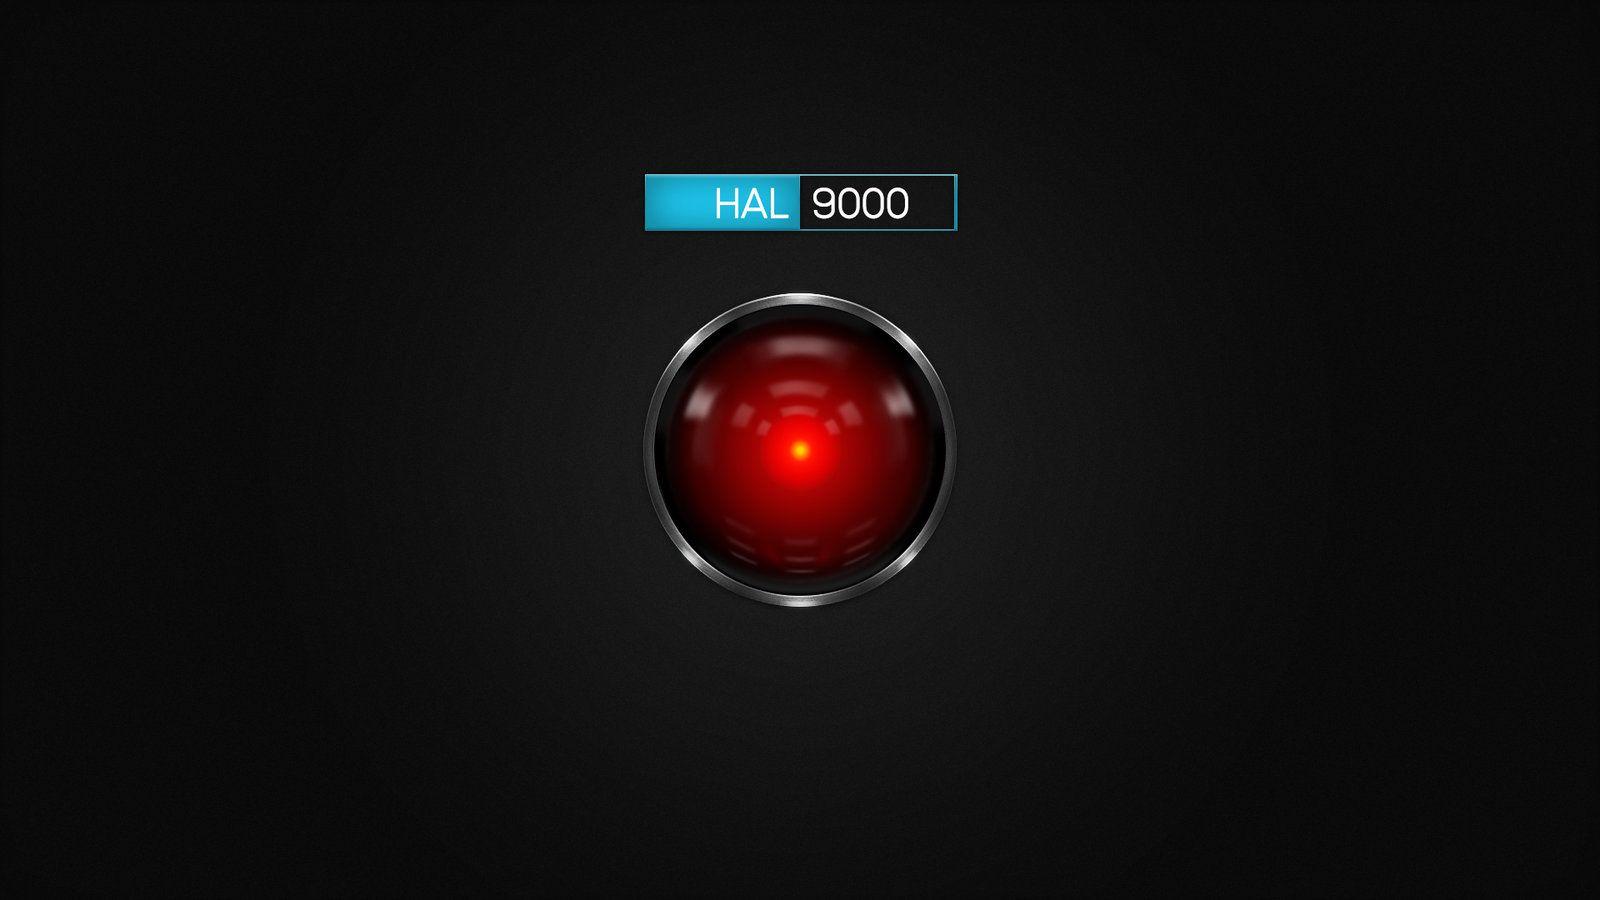 Bạn đang tìm kiếm những hình nền HAL 9000 đẹp nhất để cài đặt trên máy tính của mình? Vậy thì đừng bỏ lỡ trang WallpaperAccess, nơi cung cấp những bức ảnh HD sắc nét, độ phân giải cao, từ các nghệ sĩ đến người dùng đóng góp. Tận hưởng những hình nền độc đáo, thu hút ánh nhìn của mọi người.